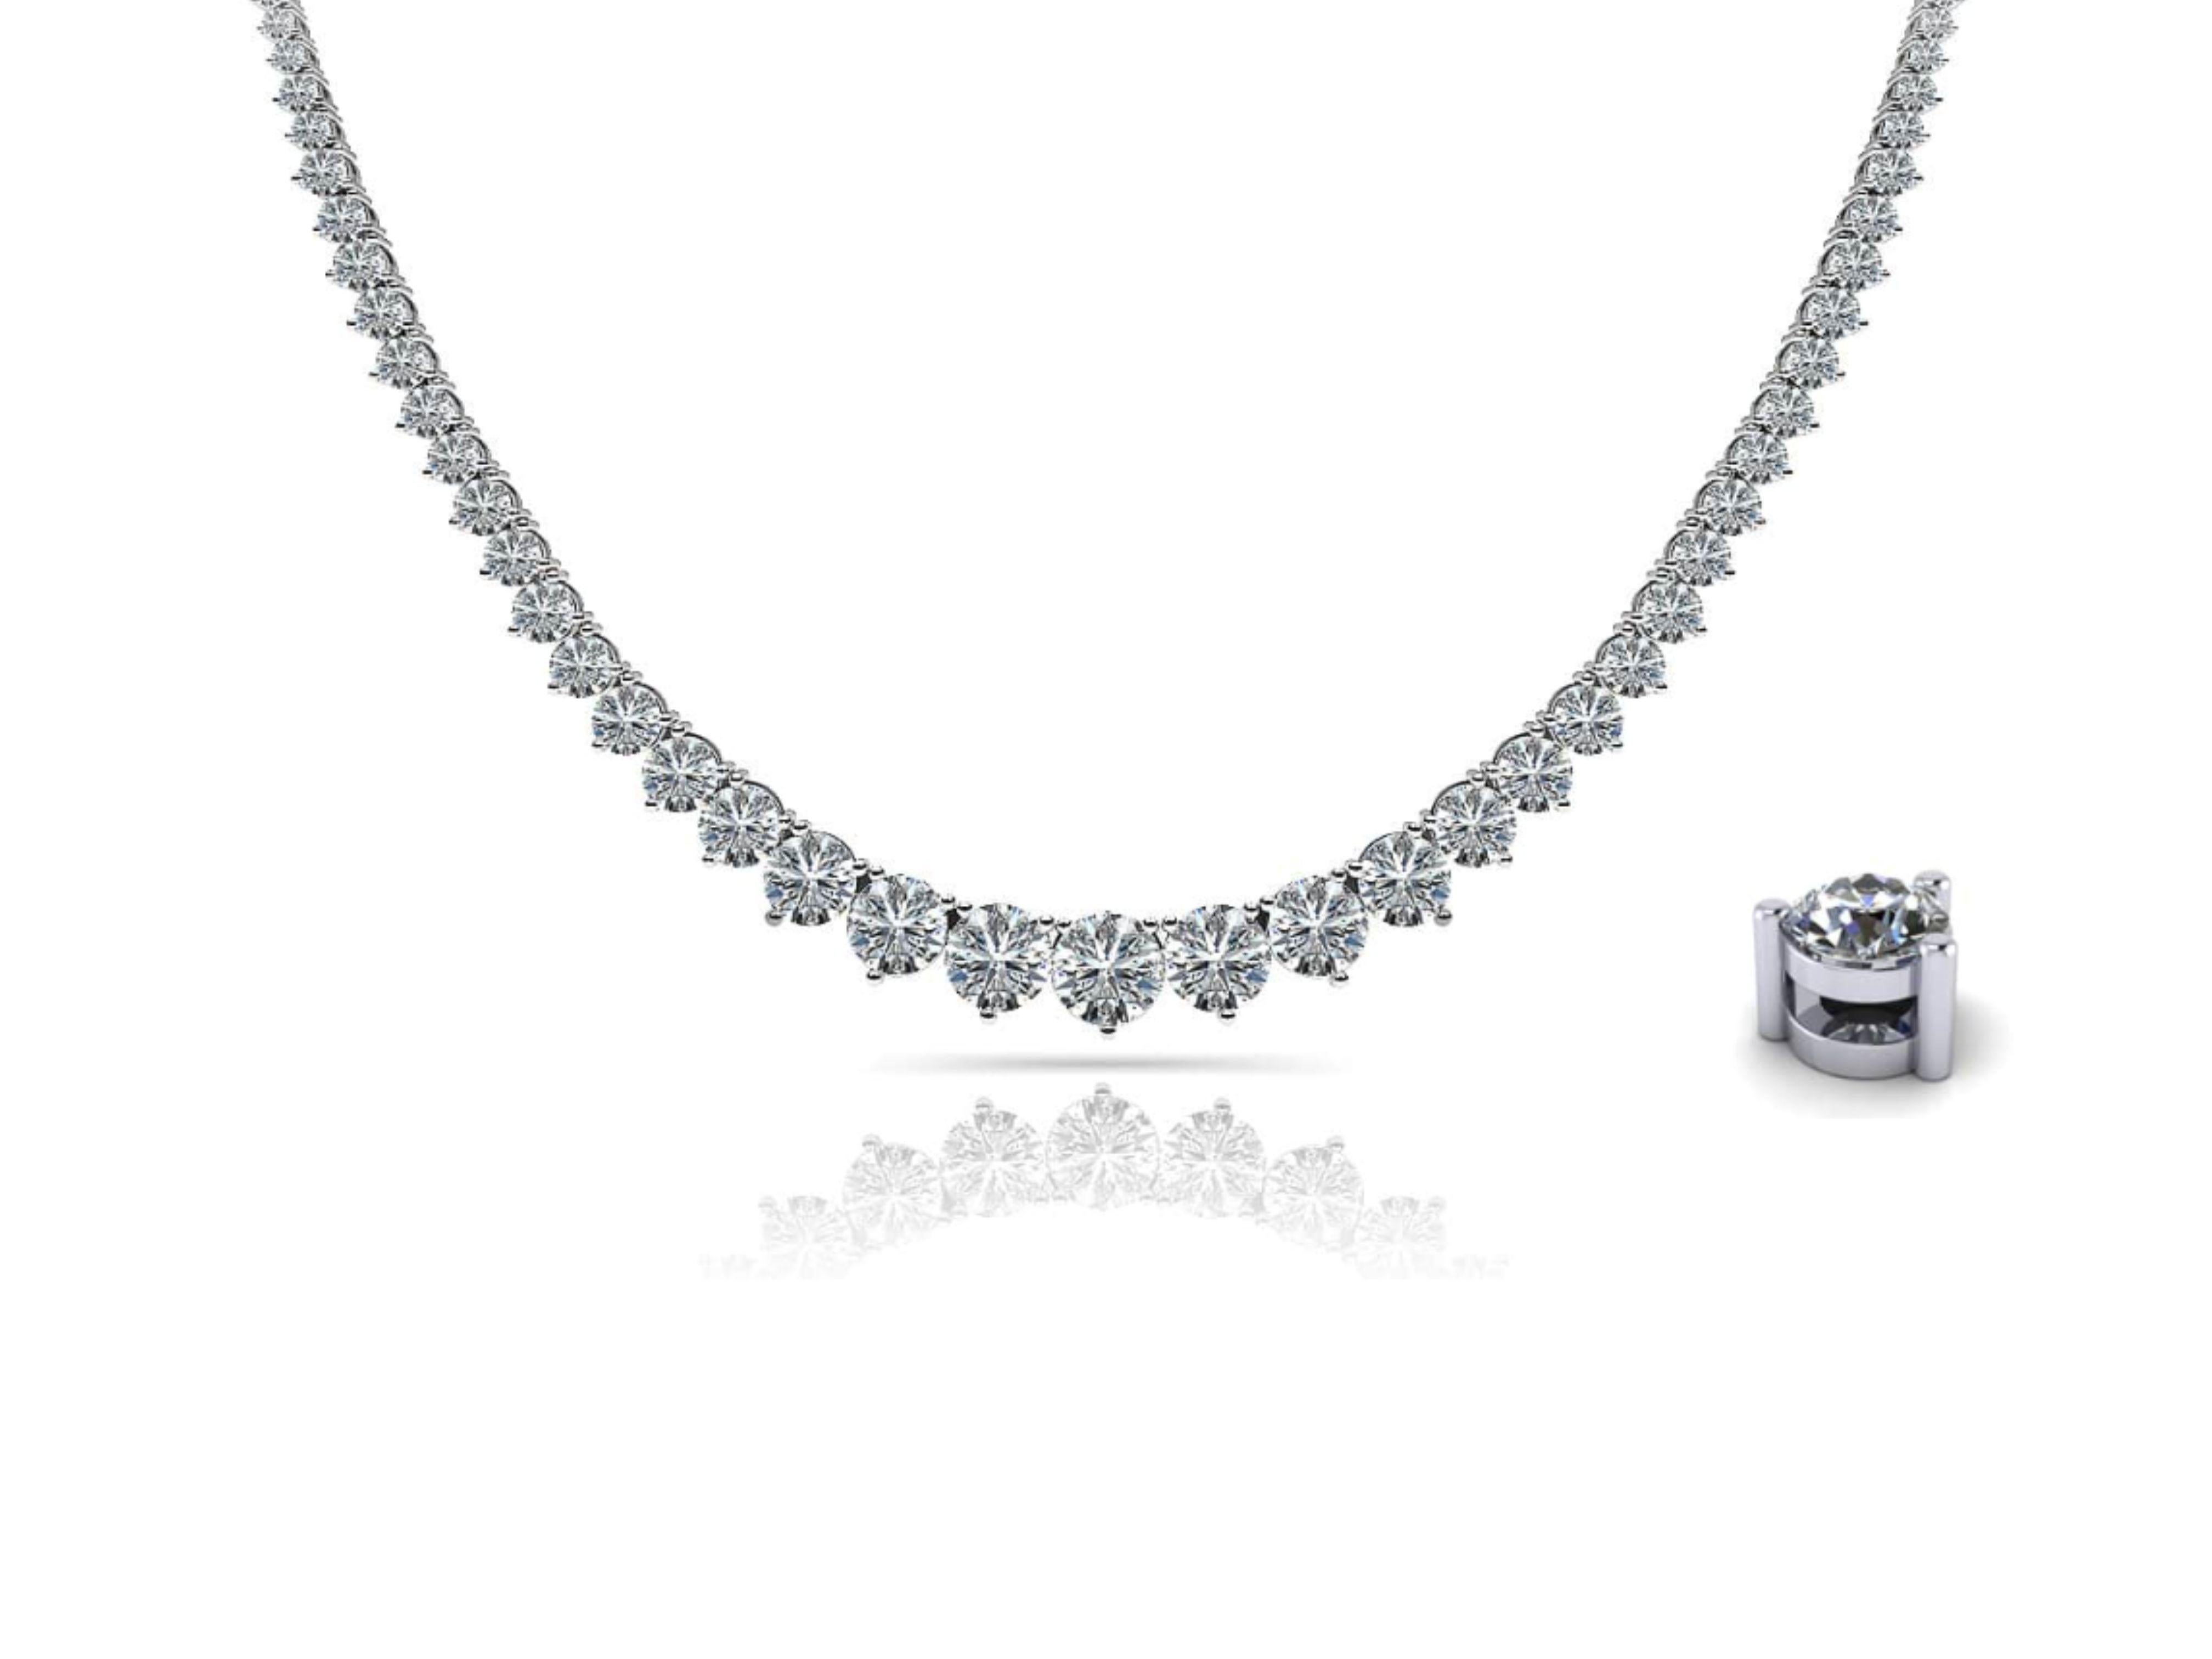 Collier Riviera en diamant naturel gradué de 15,50 carats au total, en platine. 

Ce collier unisexe présente 134 diamants blancs individuels de taille ronde et brillante. Ensemble, les diamants pèsent 15,50 carats. Les plus gros diamants mesurent